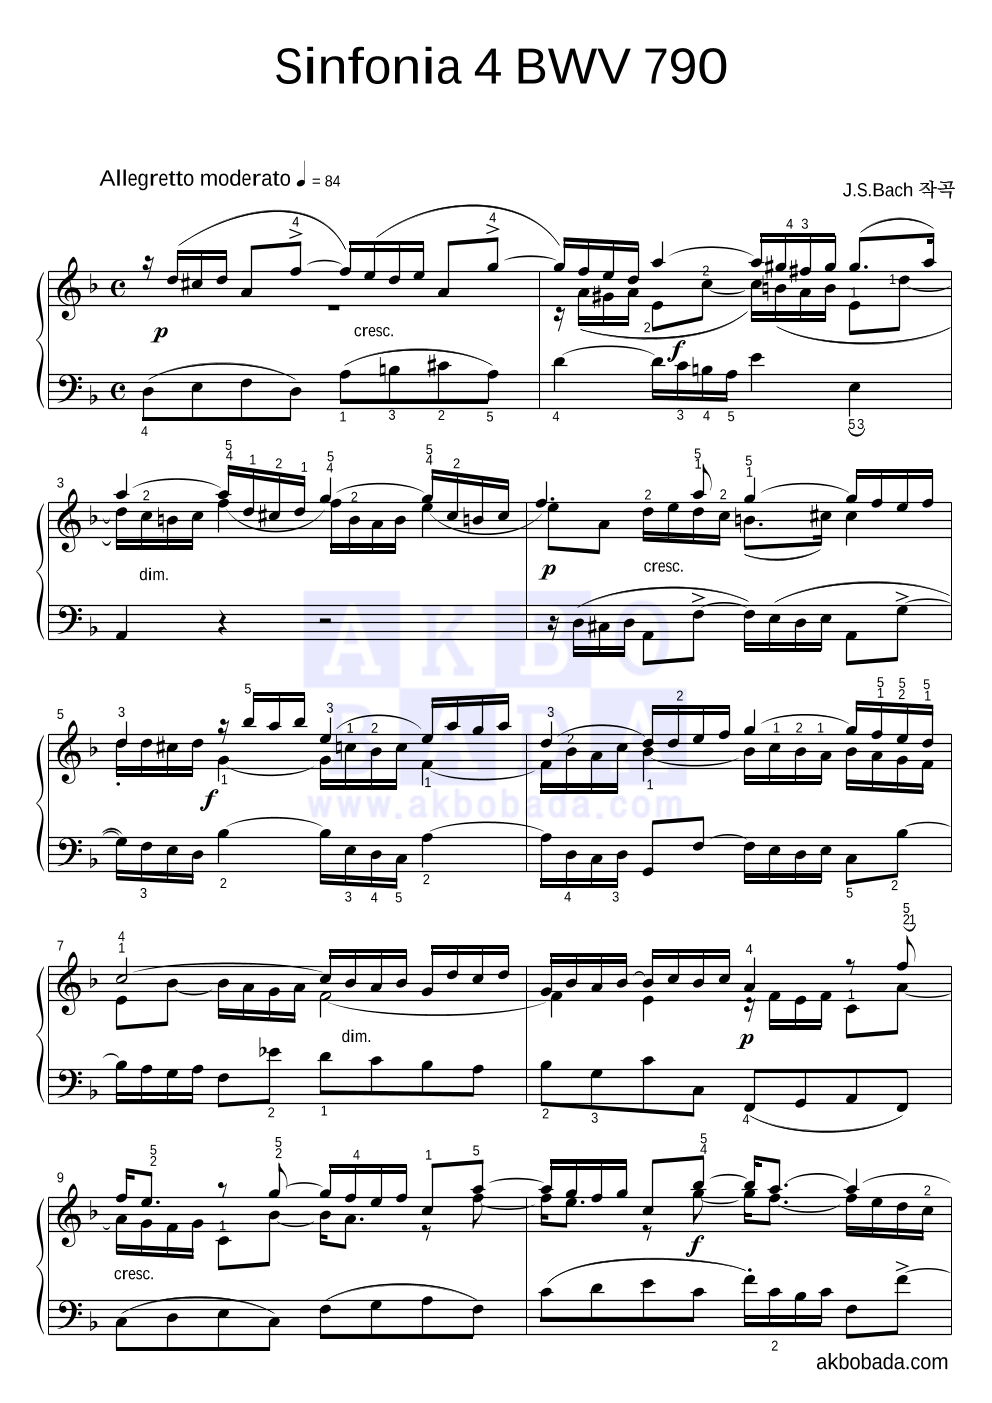 바흐 - Sinfonia 4 BWV 790 피아노 2단 악보 